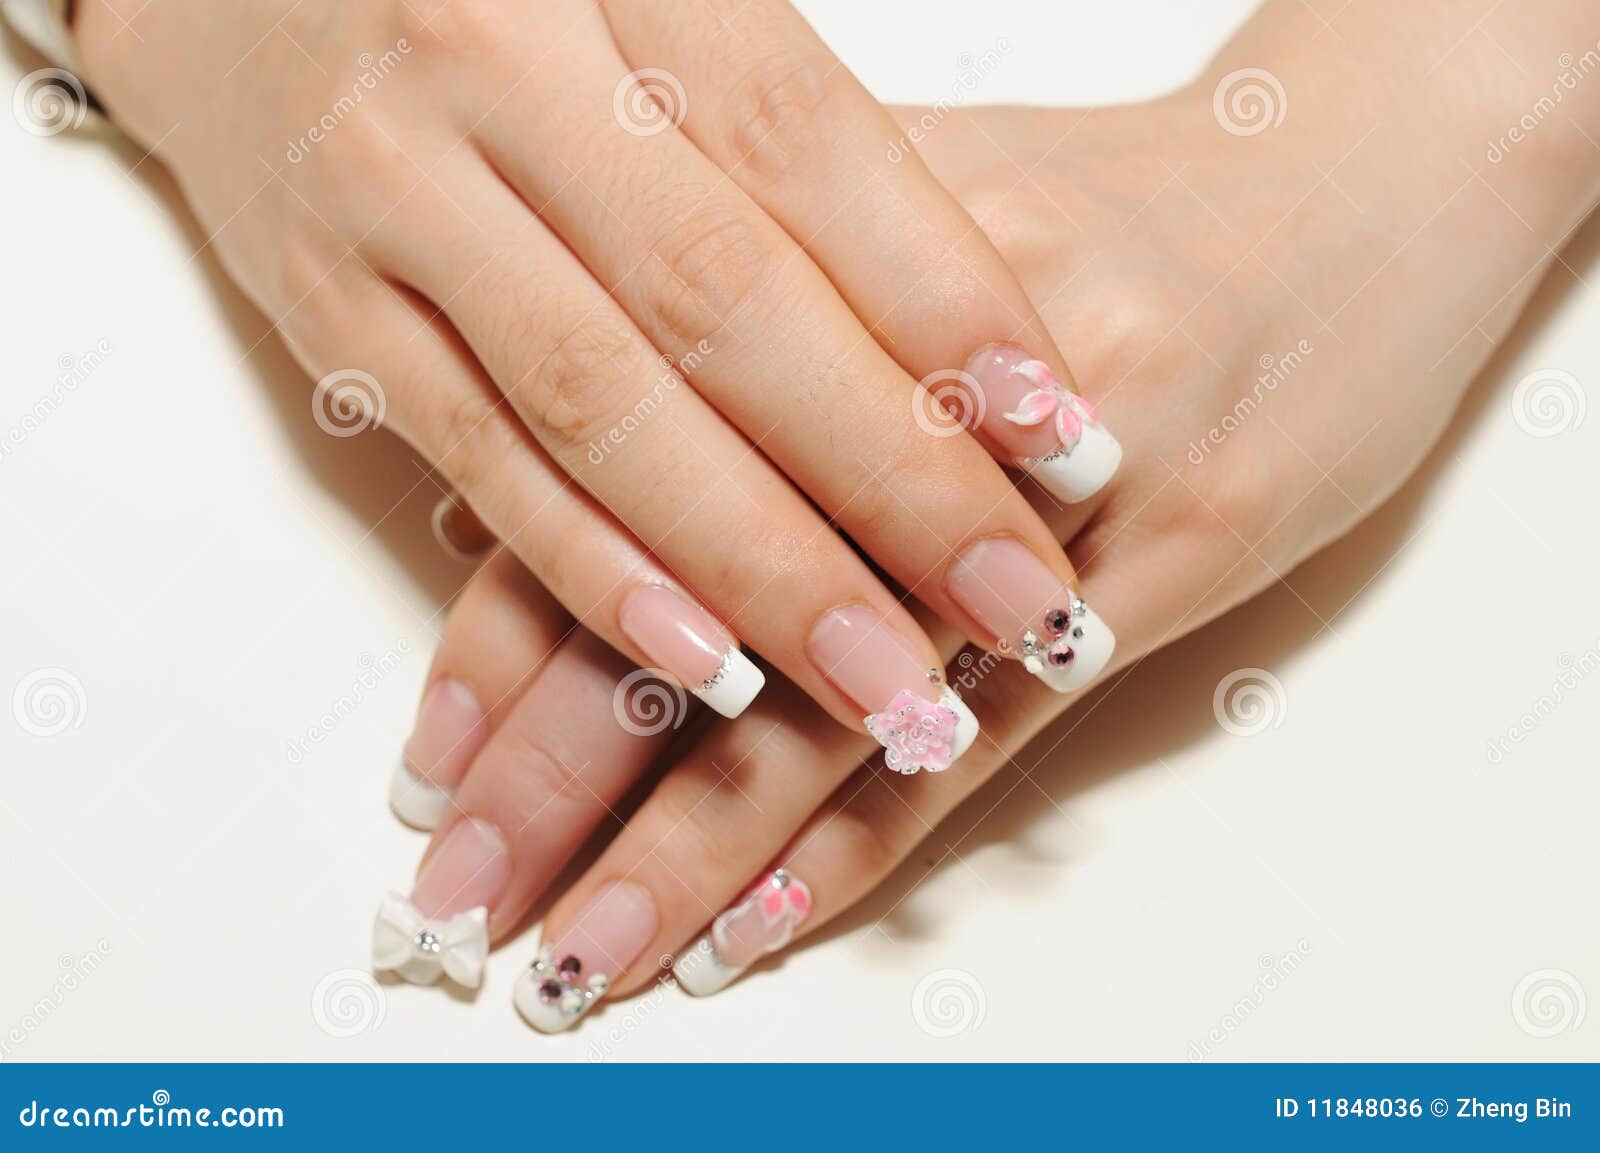 nails